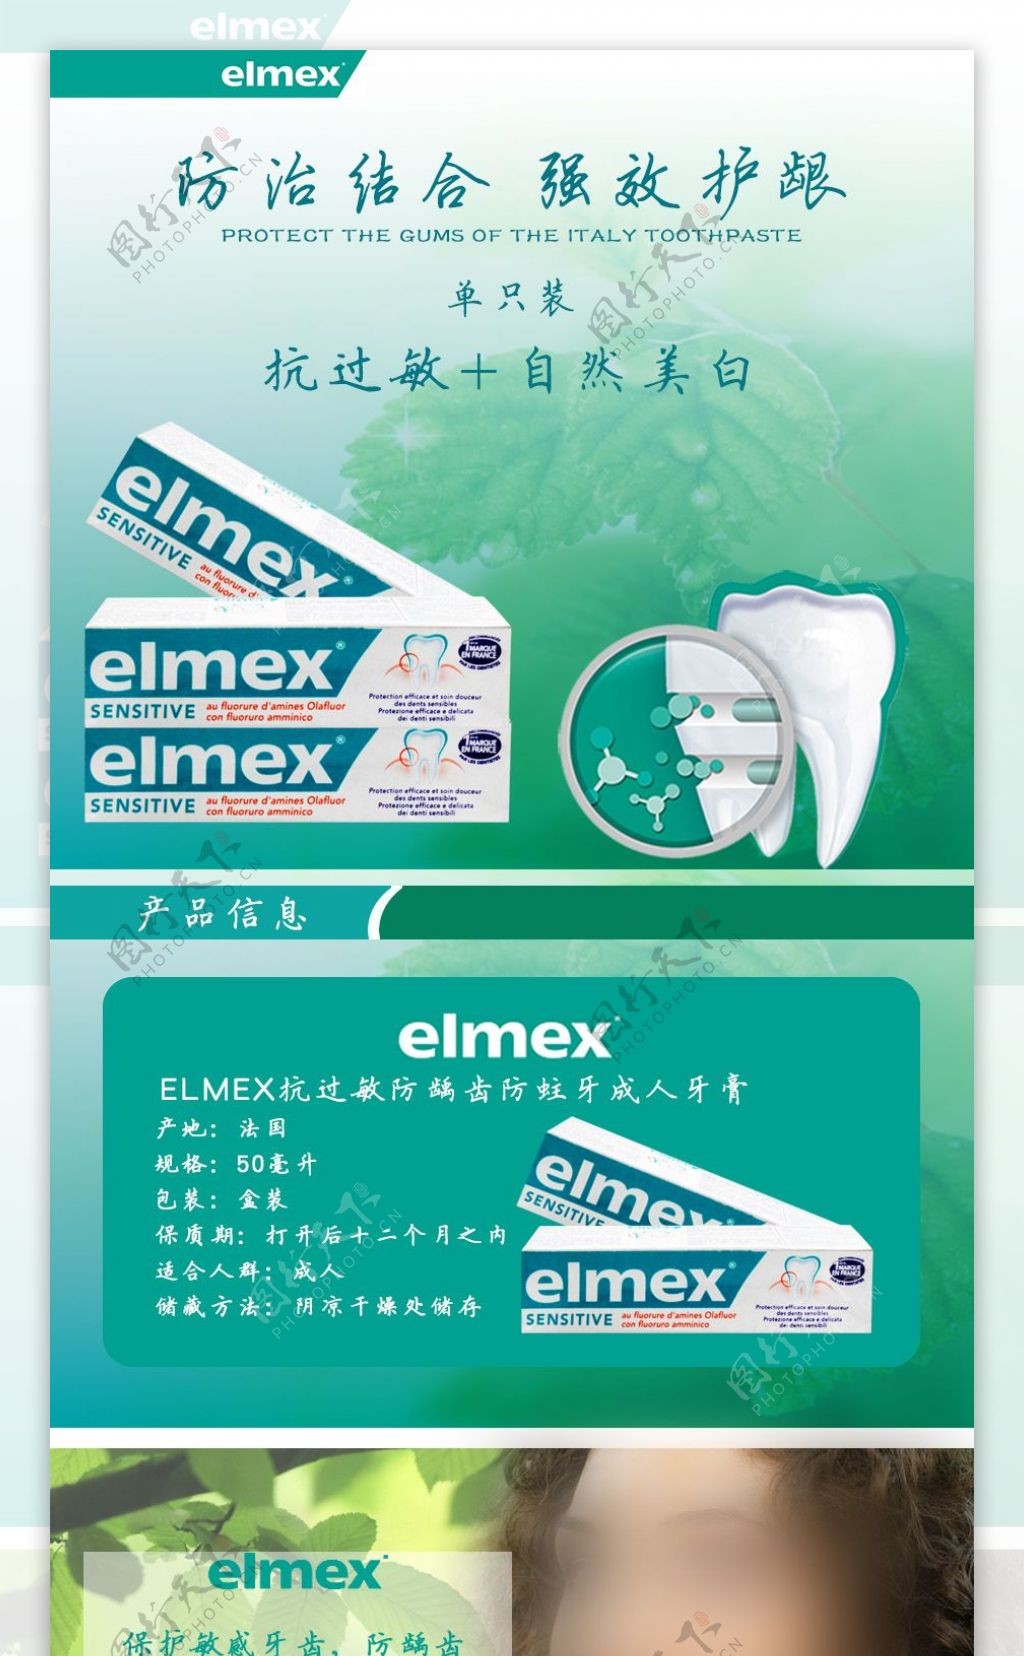 elmex牙膏详情页